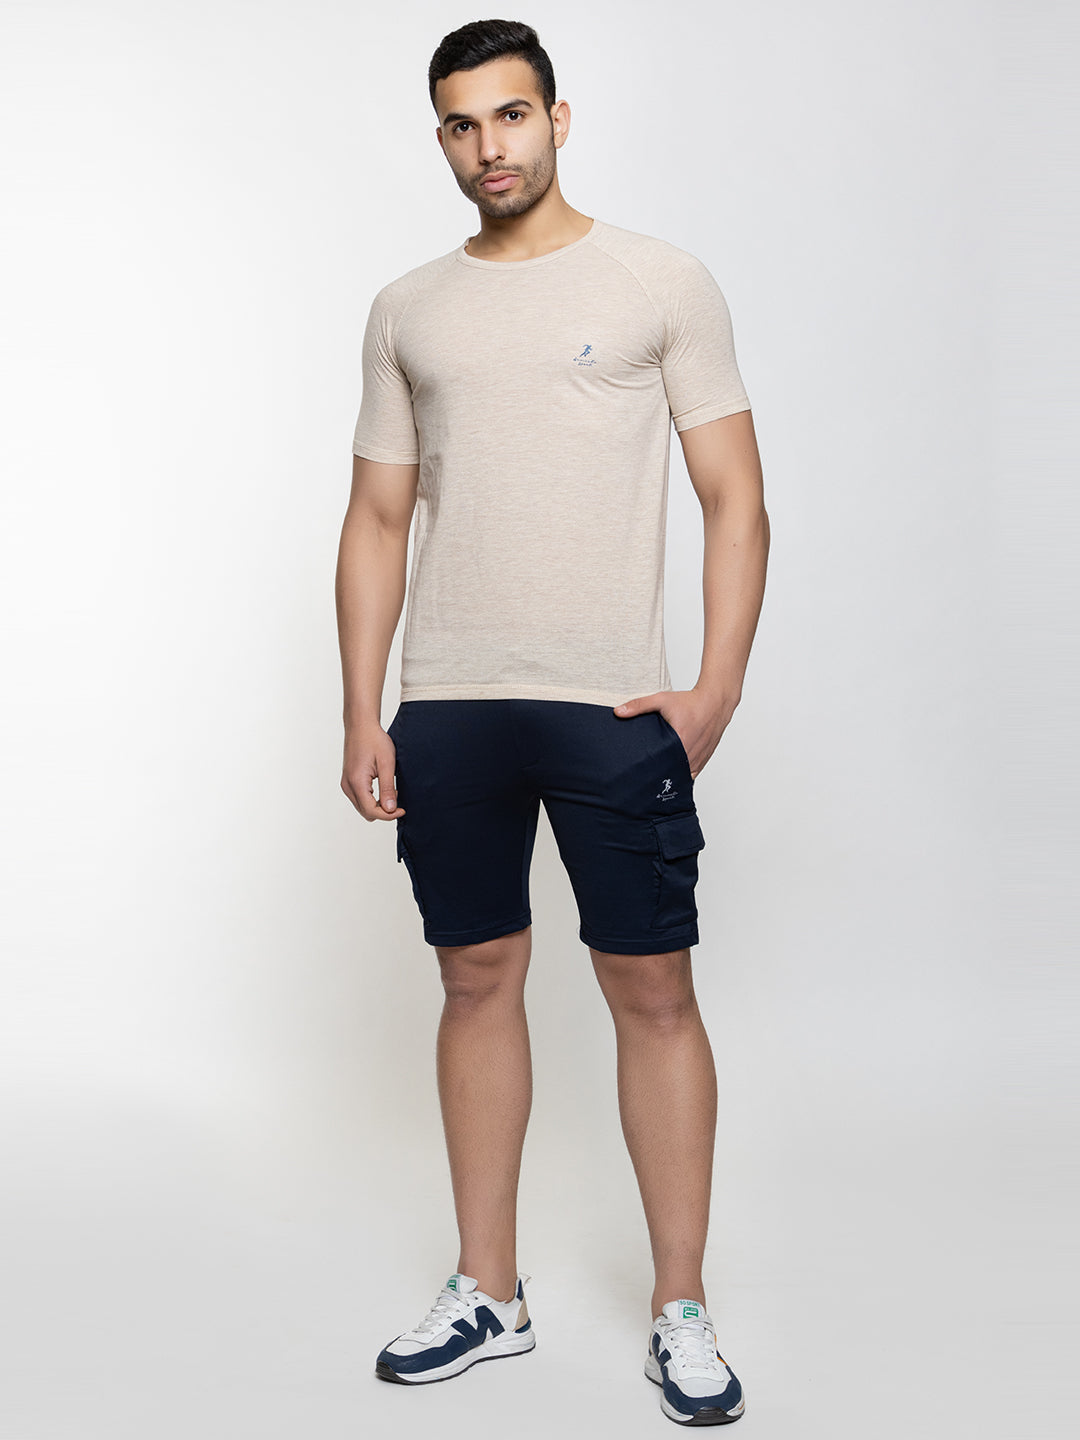 104 Combo I Cotton Dri-Fit Sports T-shirt I Men